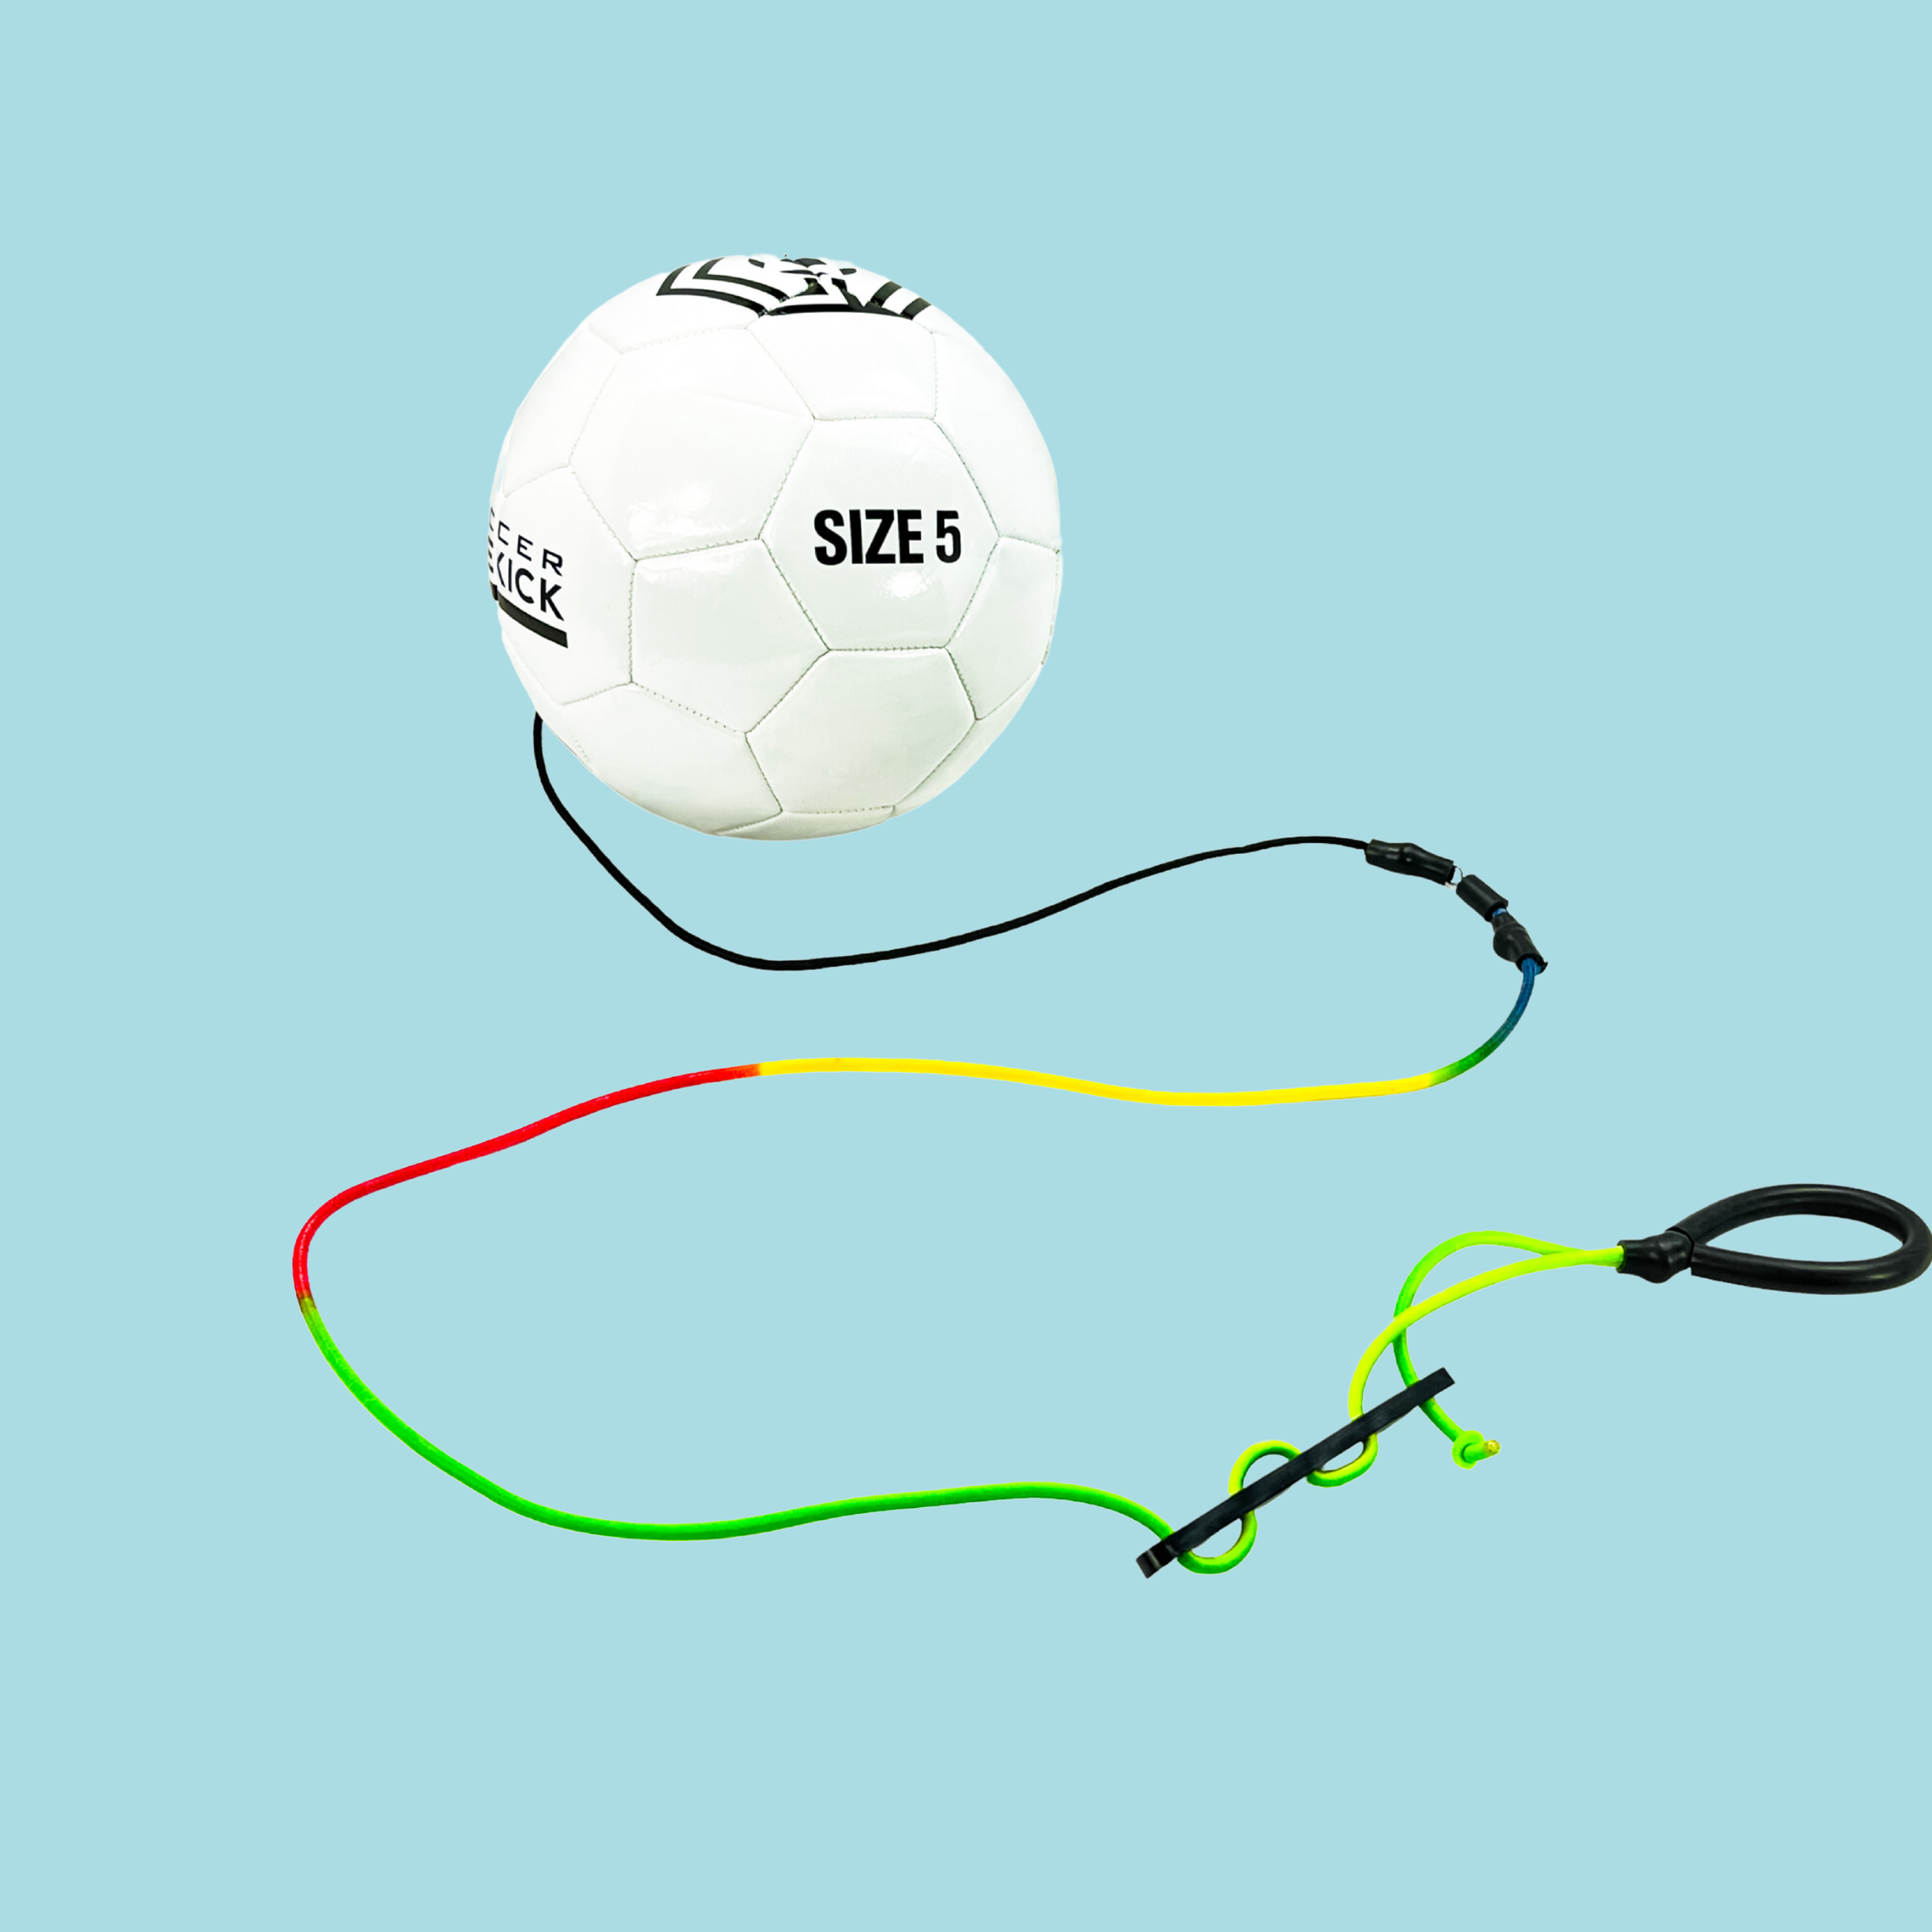 Soccer Sidekick-The Ultimate Soccer Trainer. Buy 6 Balls